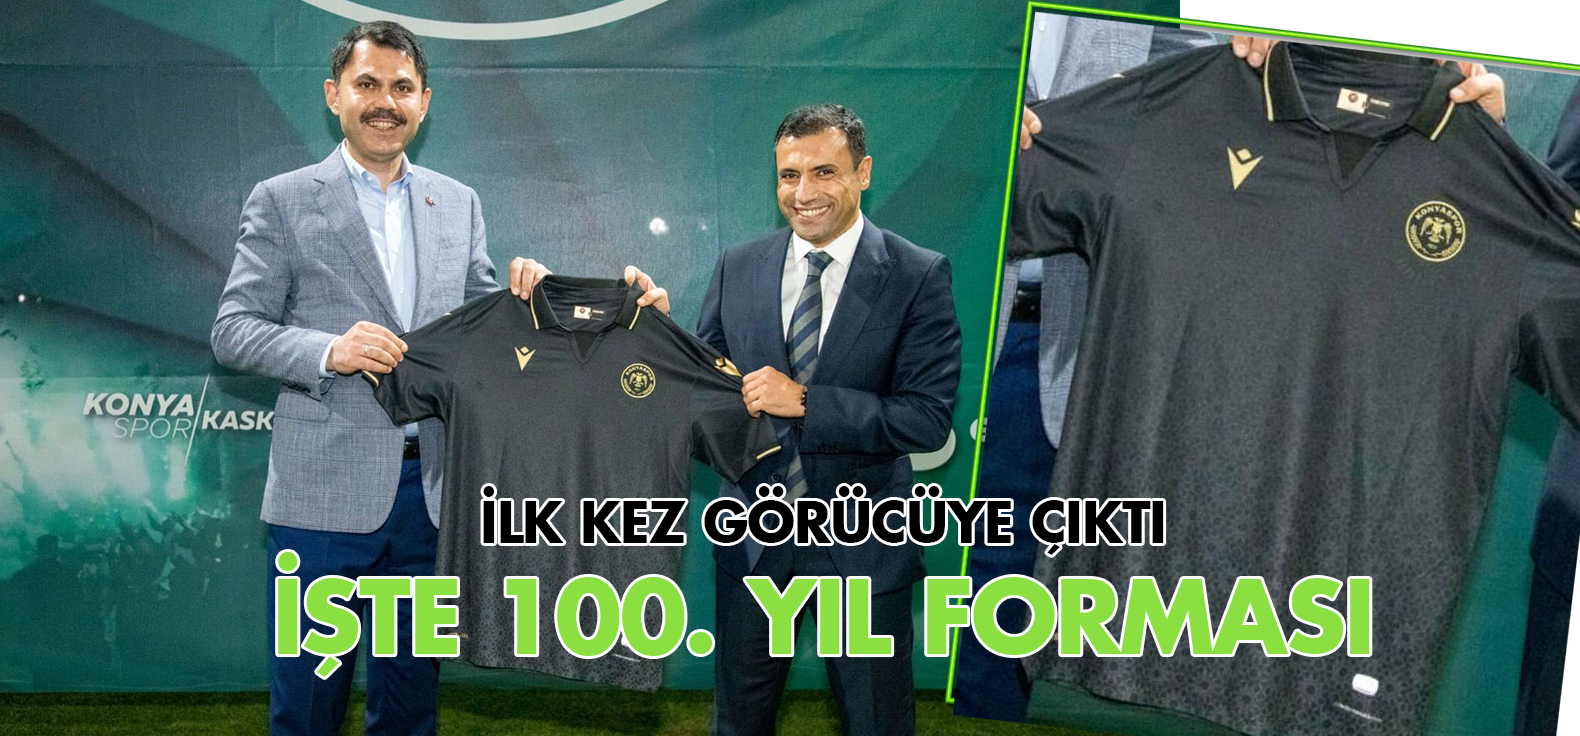 Konyaspor'da 100. yıl forması görücüye çıktı